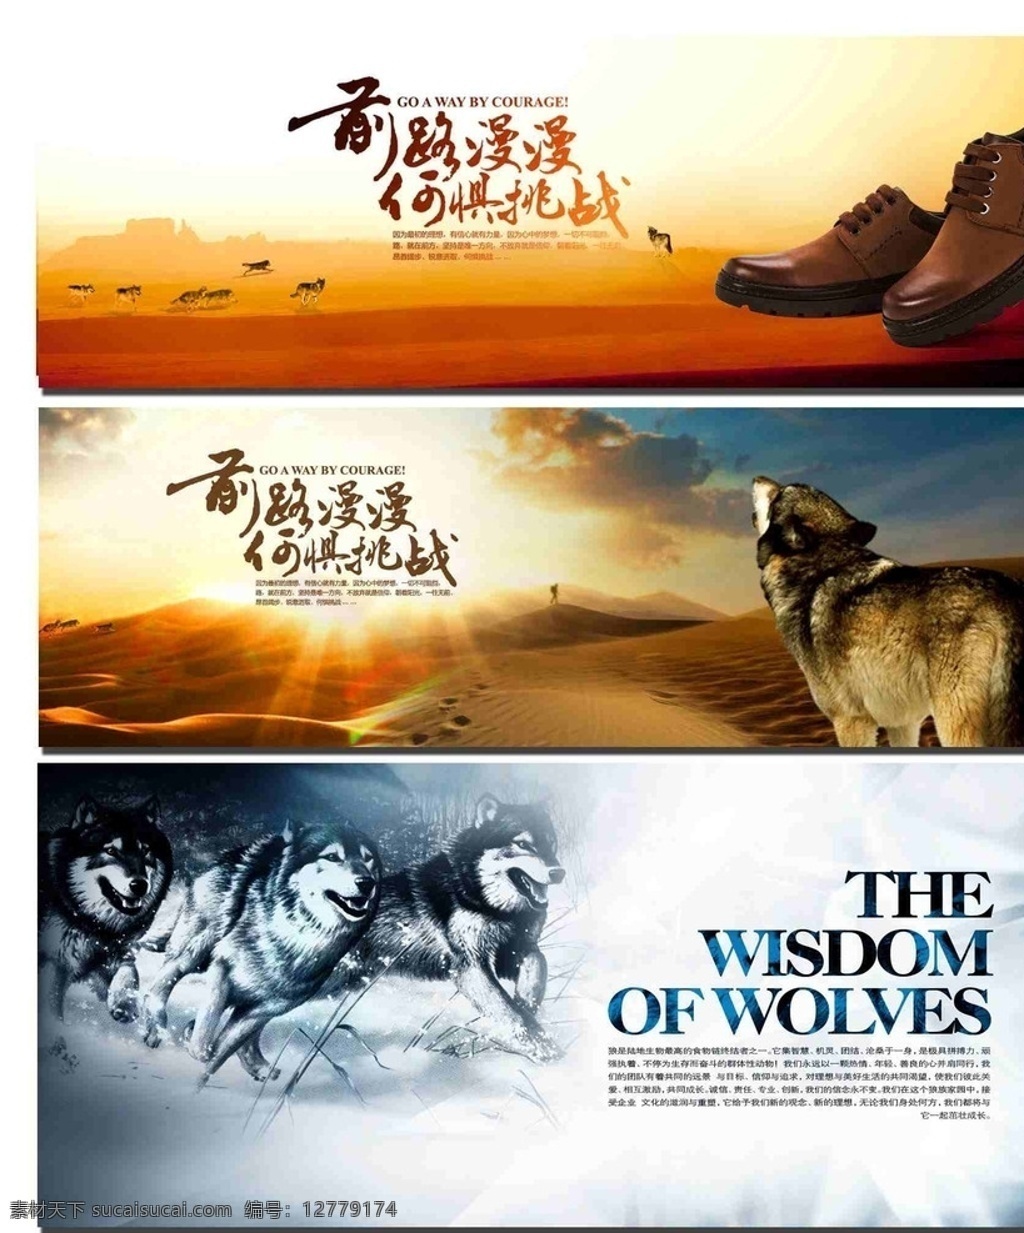 企业文化 狼文化 七匹狼 创意广告设计 创意 banner 皮鞋 淘宝图设计 淘宝界面设计 淘宝 广告